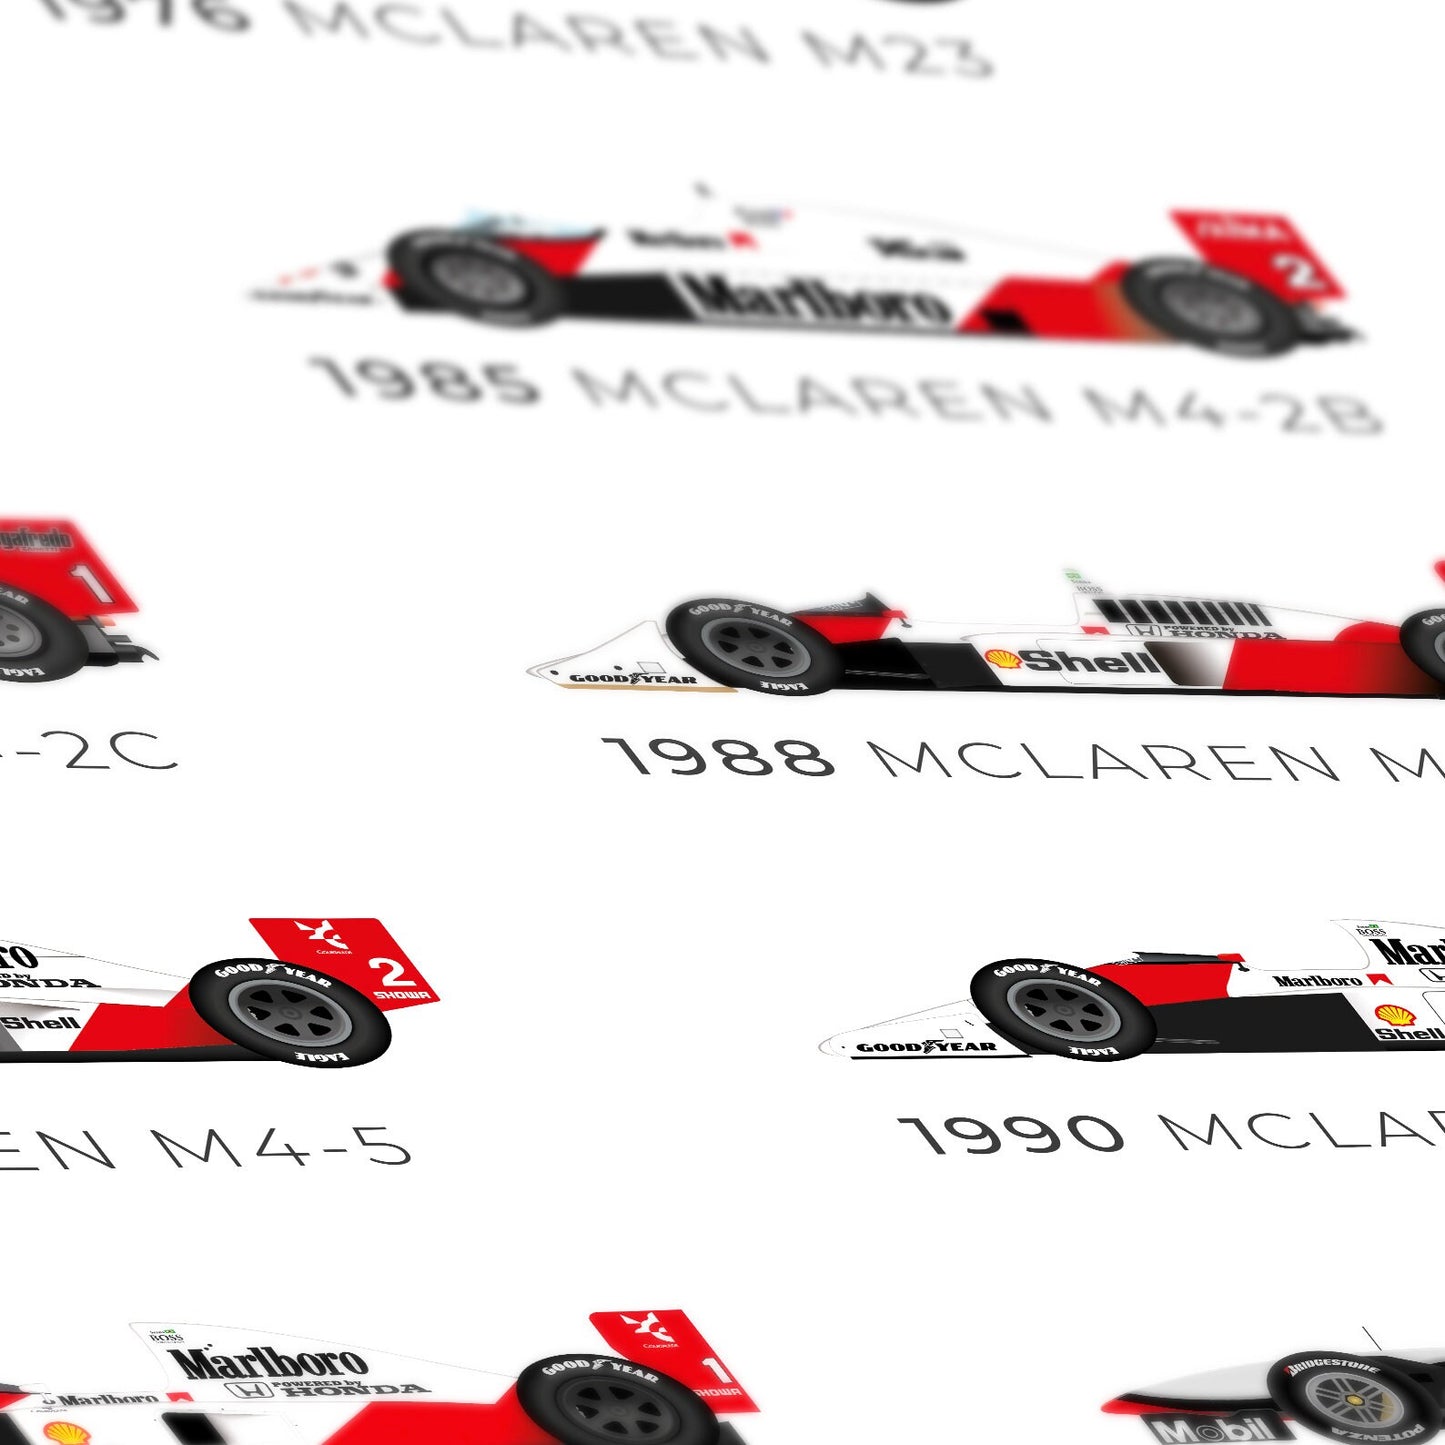 McLaren 12 fois championne du monde 